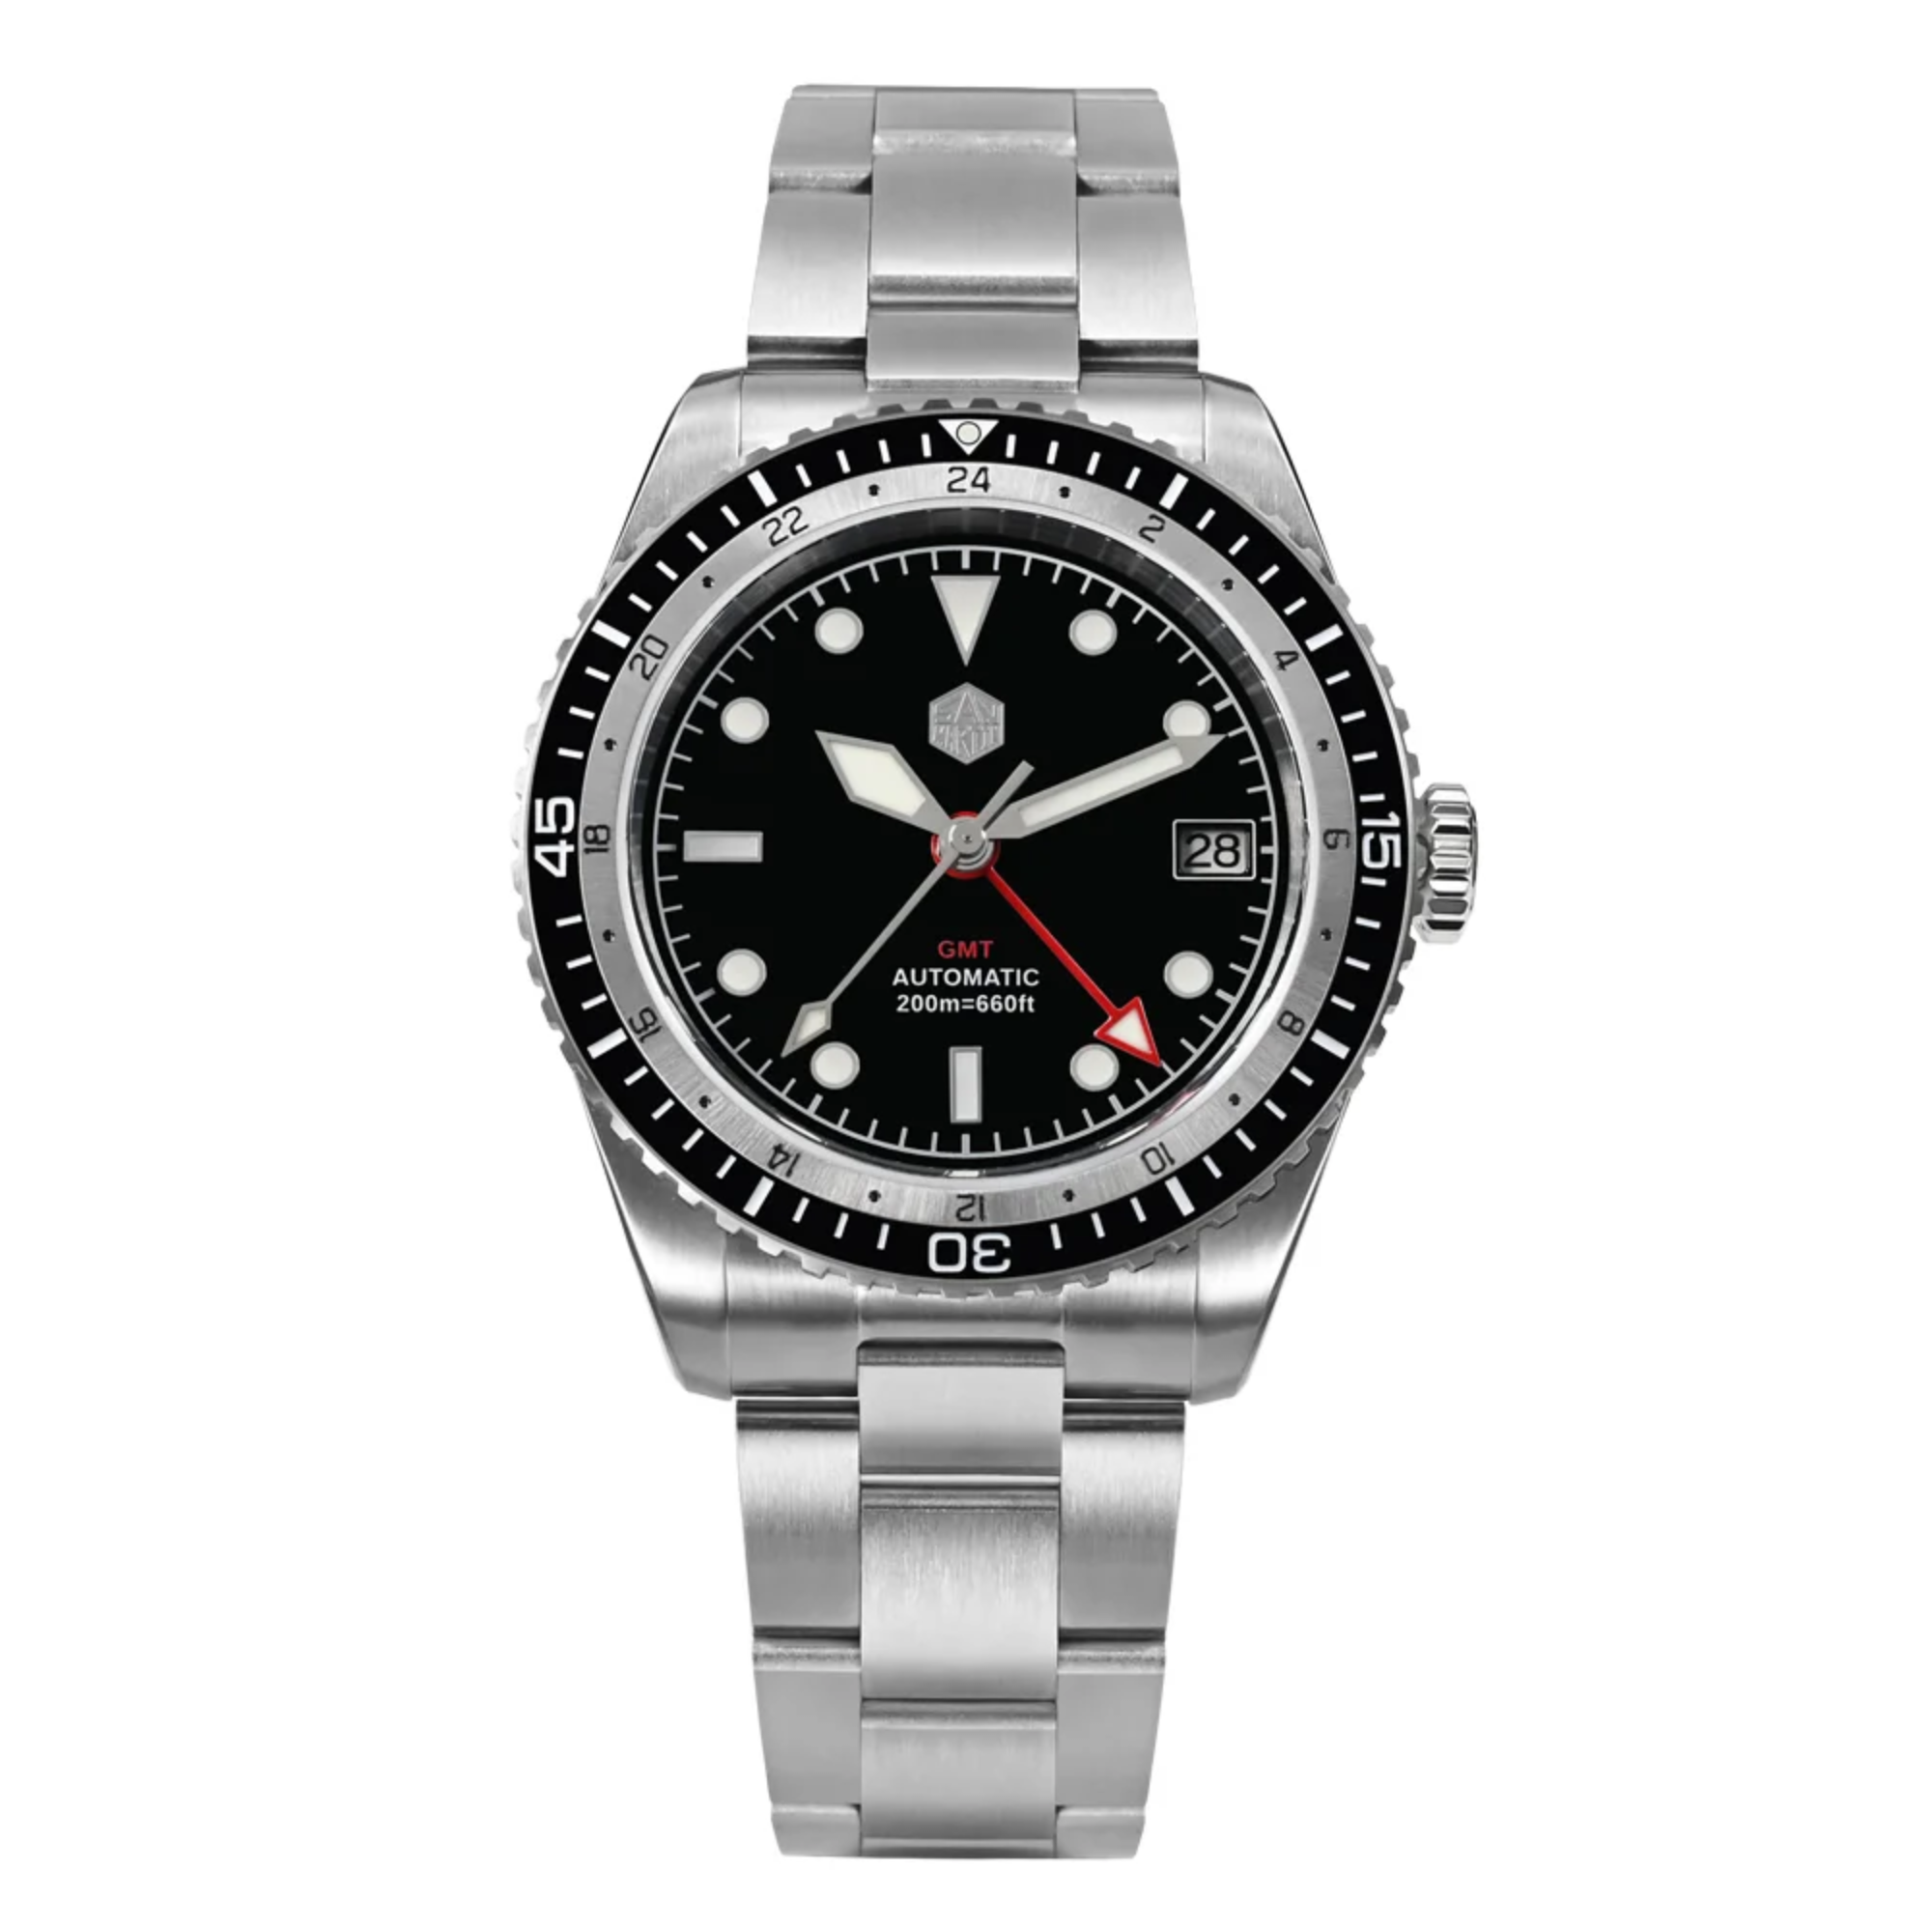 San Martin NH34 GMT Bidirectional Bezel Light Date SN0112G - Black Bezel san martin watches india online